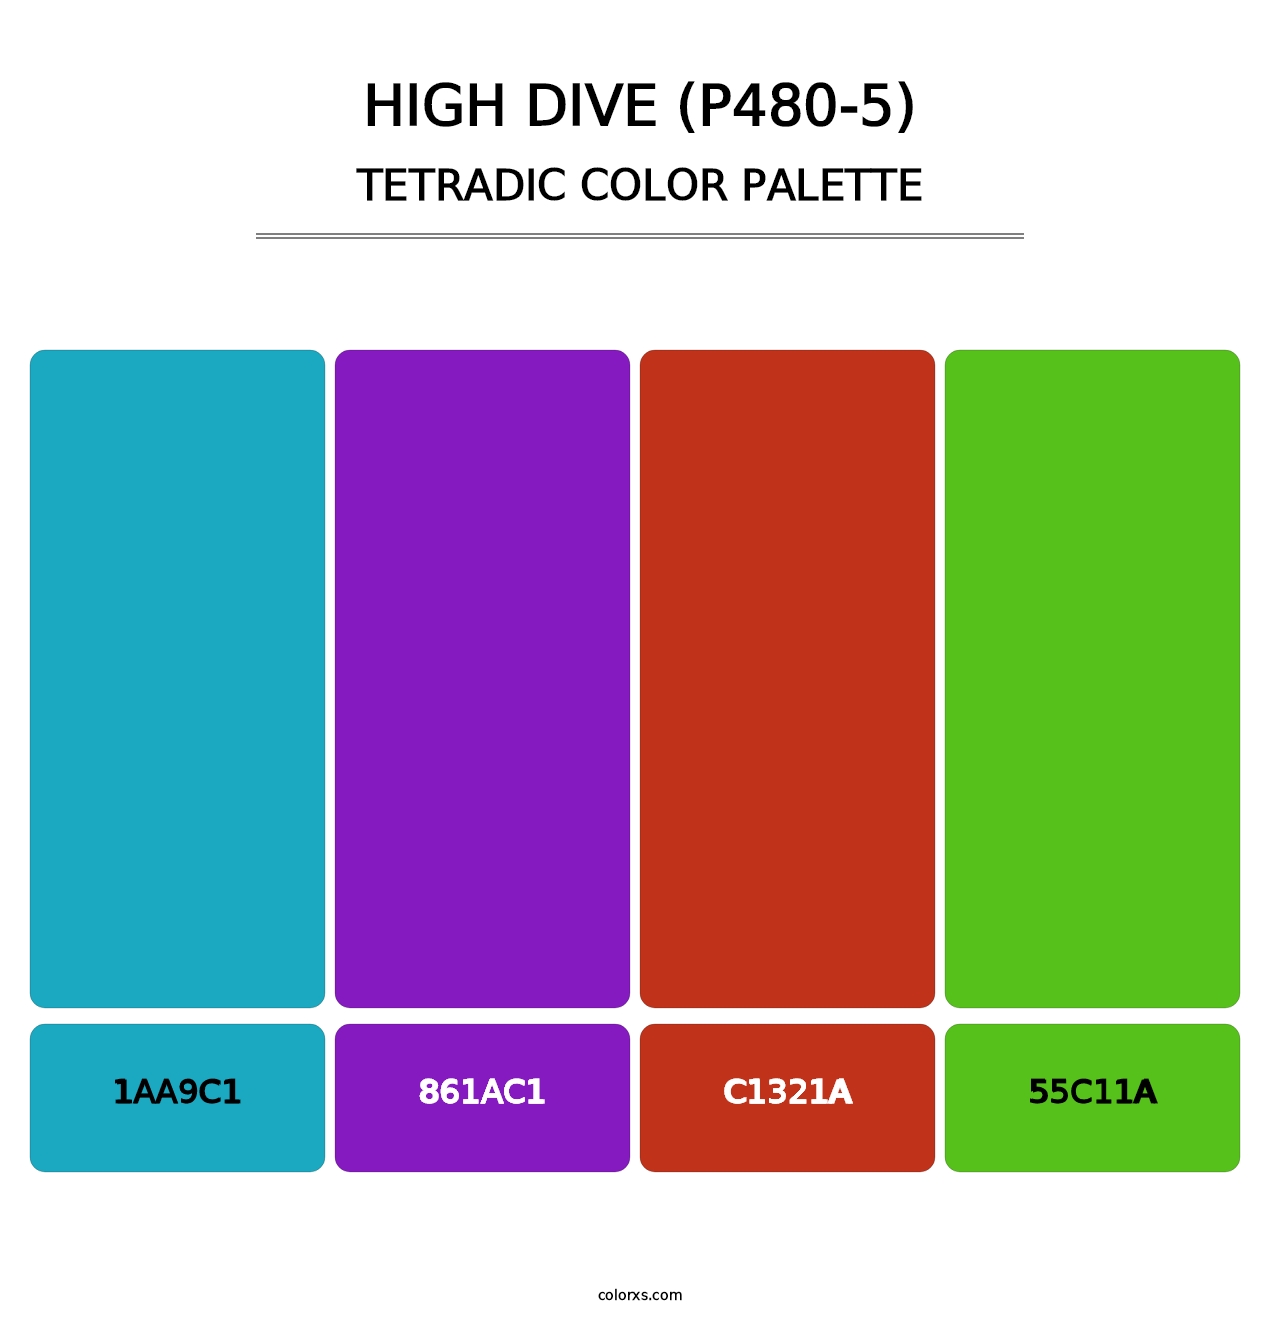 High Dive (P480-5) - Tetradic Color Palette